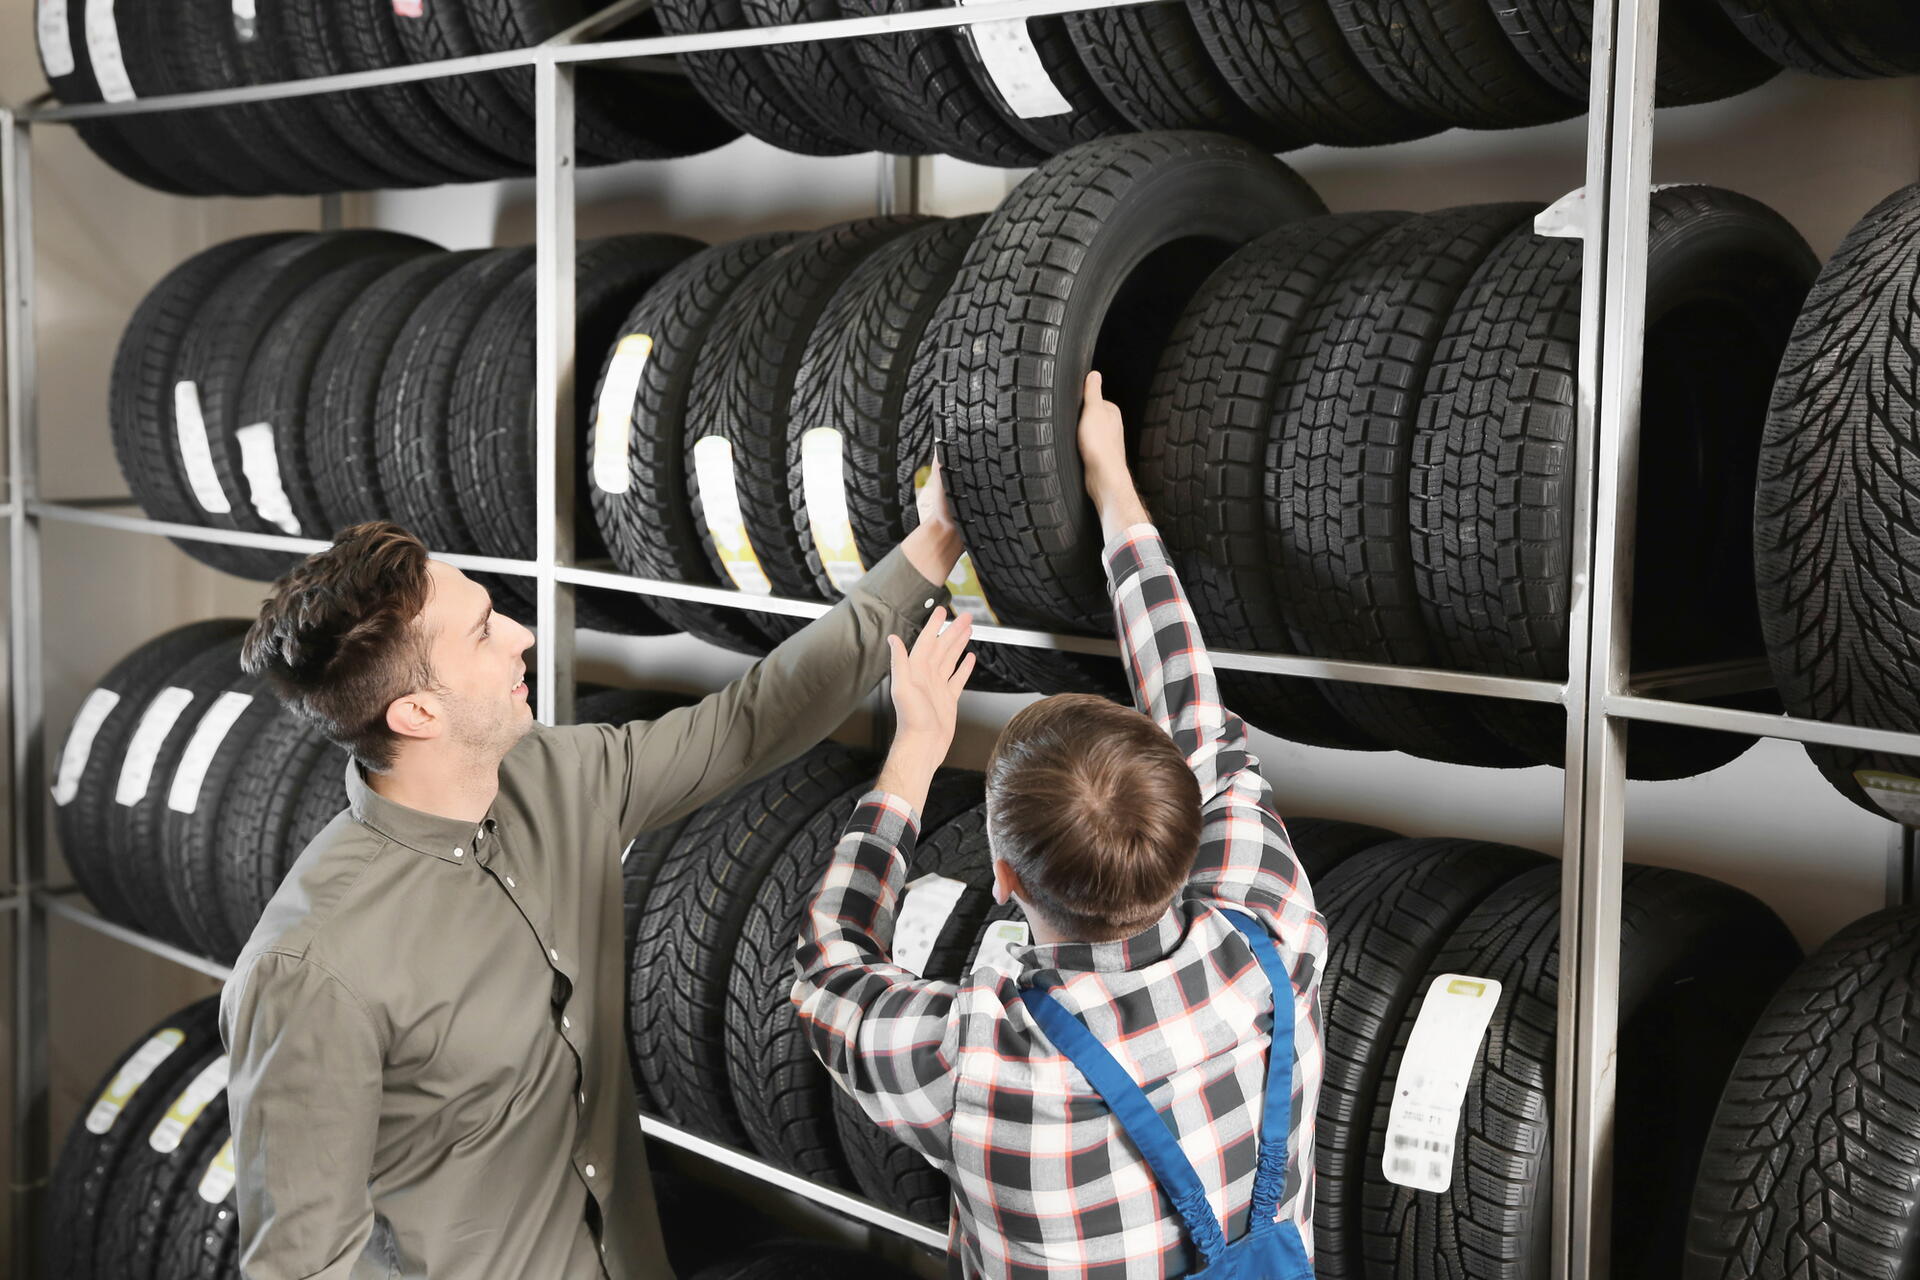 Poradíme, jak a kde koupit nejlevnější pneumatiky bez rizika